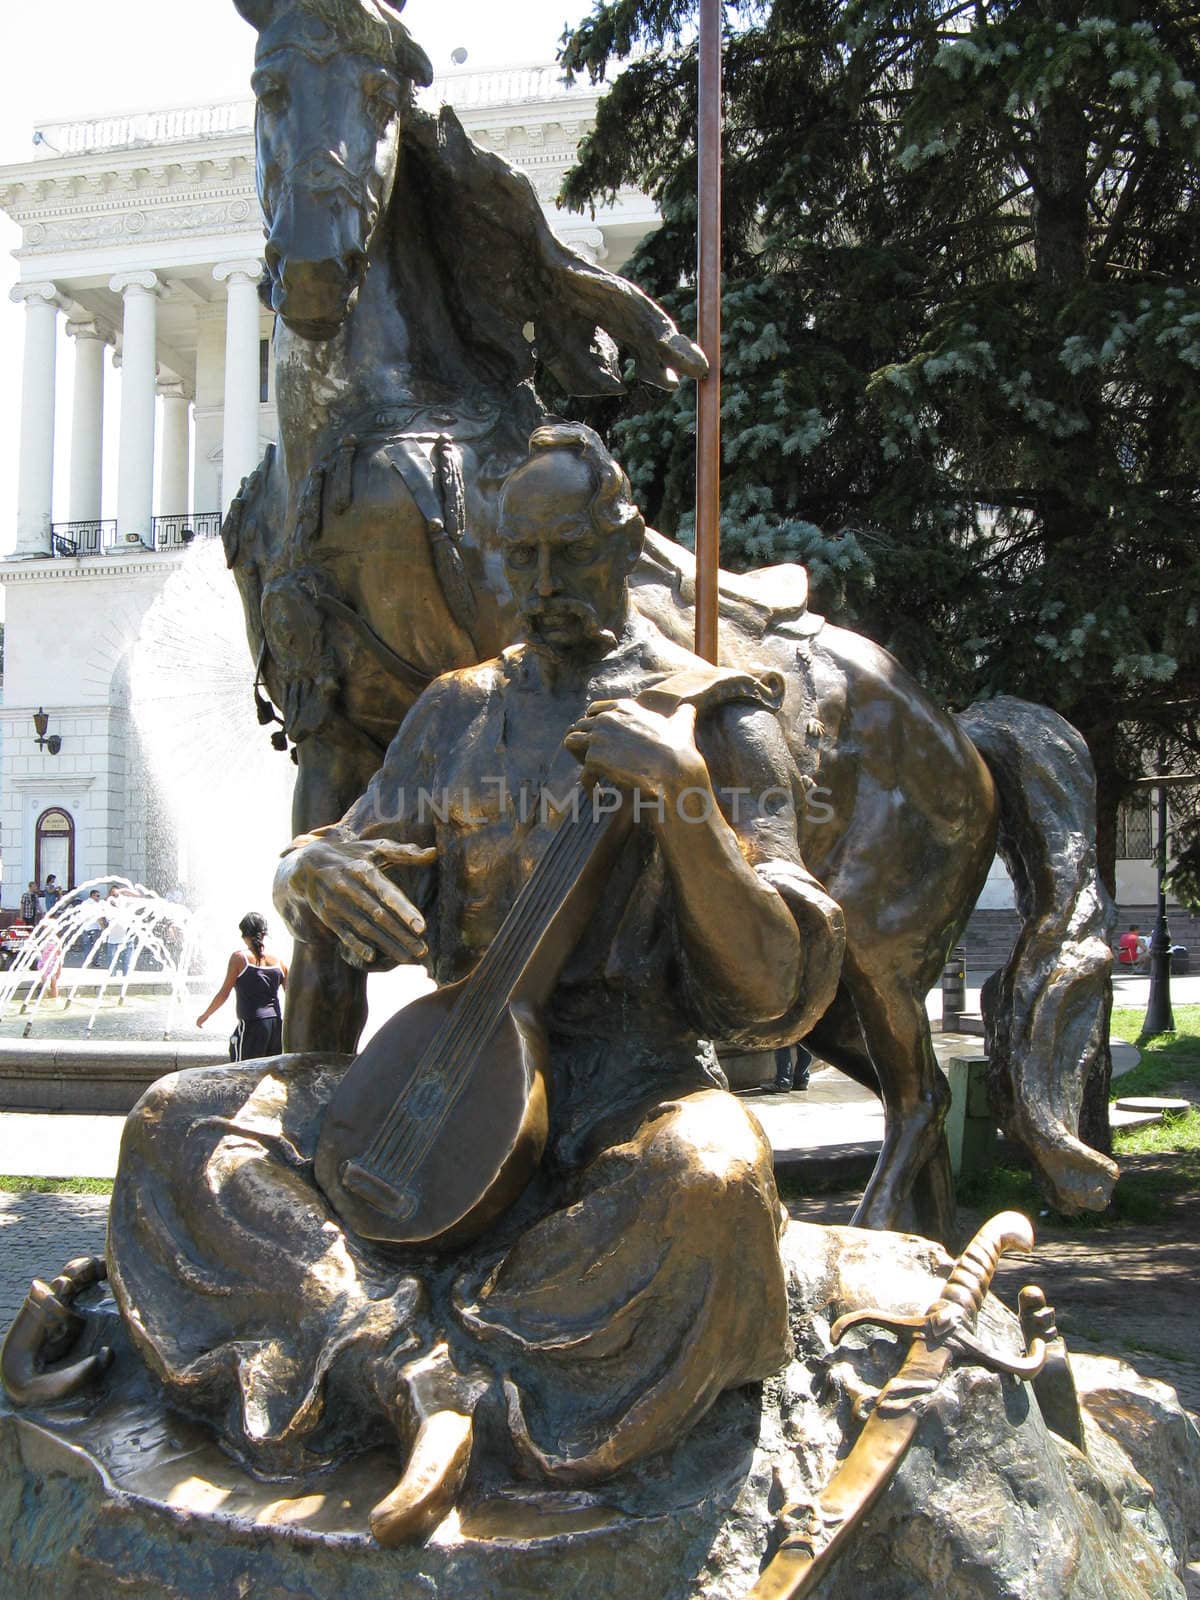 Monument in Ukraine in the city of Kiev